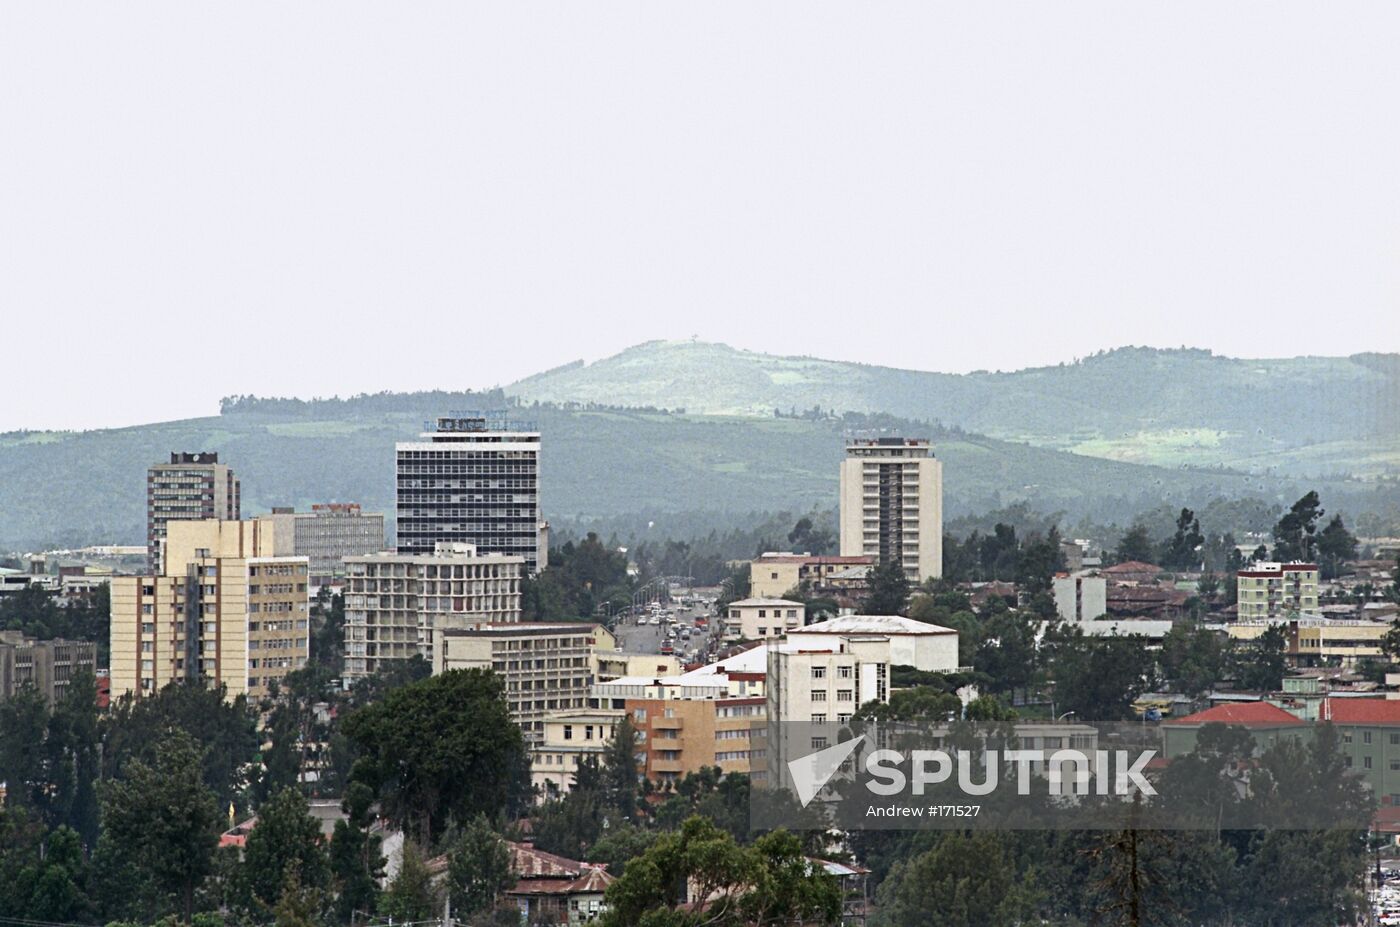 Addis Abeba, Ethiopia